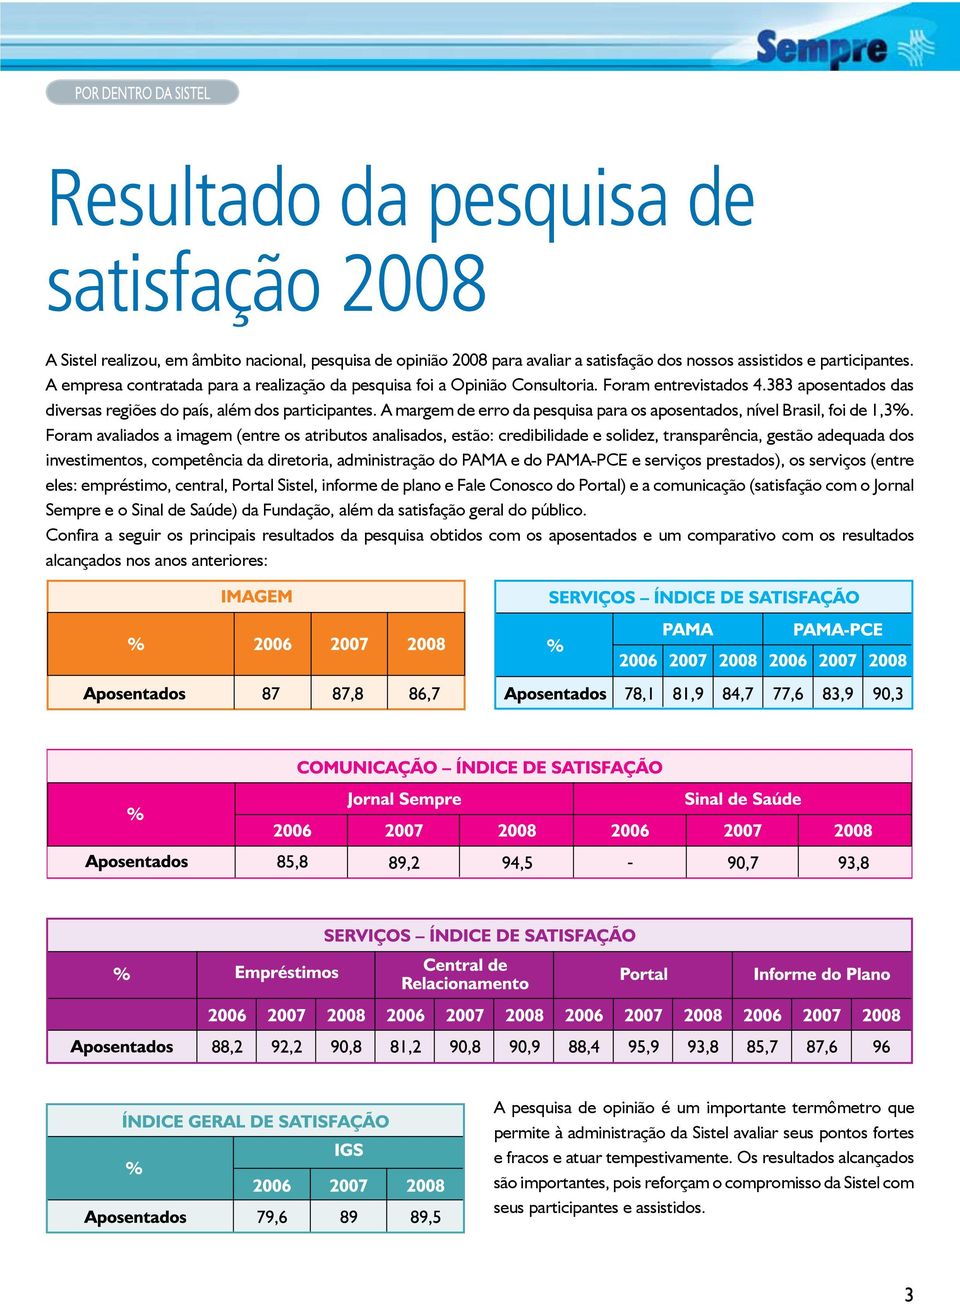 A margem de erro da pesquisa para os aposentados, nível Brasil, foi de 1,3%.